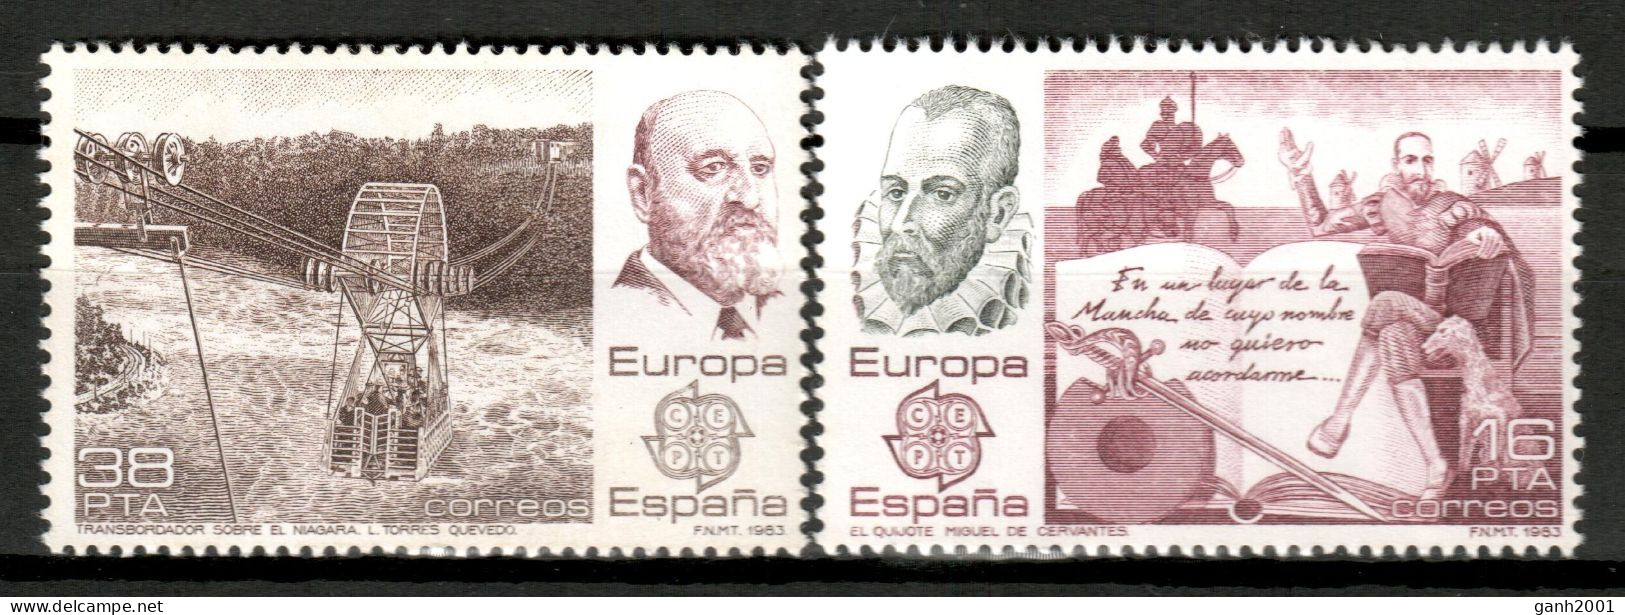 Spain 1983 España / Europa CEPT Inventions Of Humanity MNH Inventos De La Humanidad / Ie28  38-45 - 1983